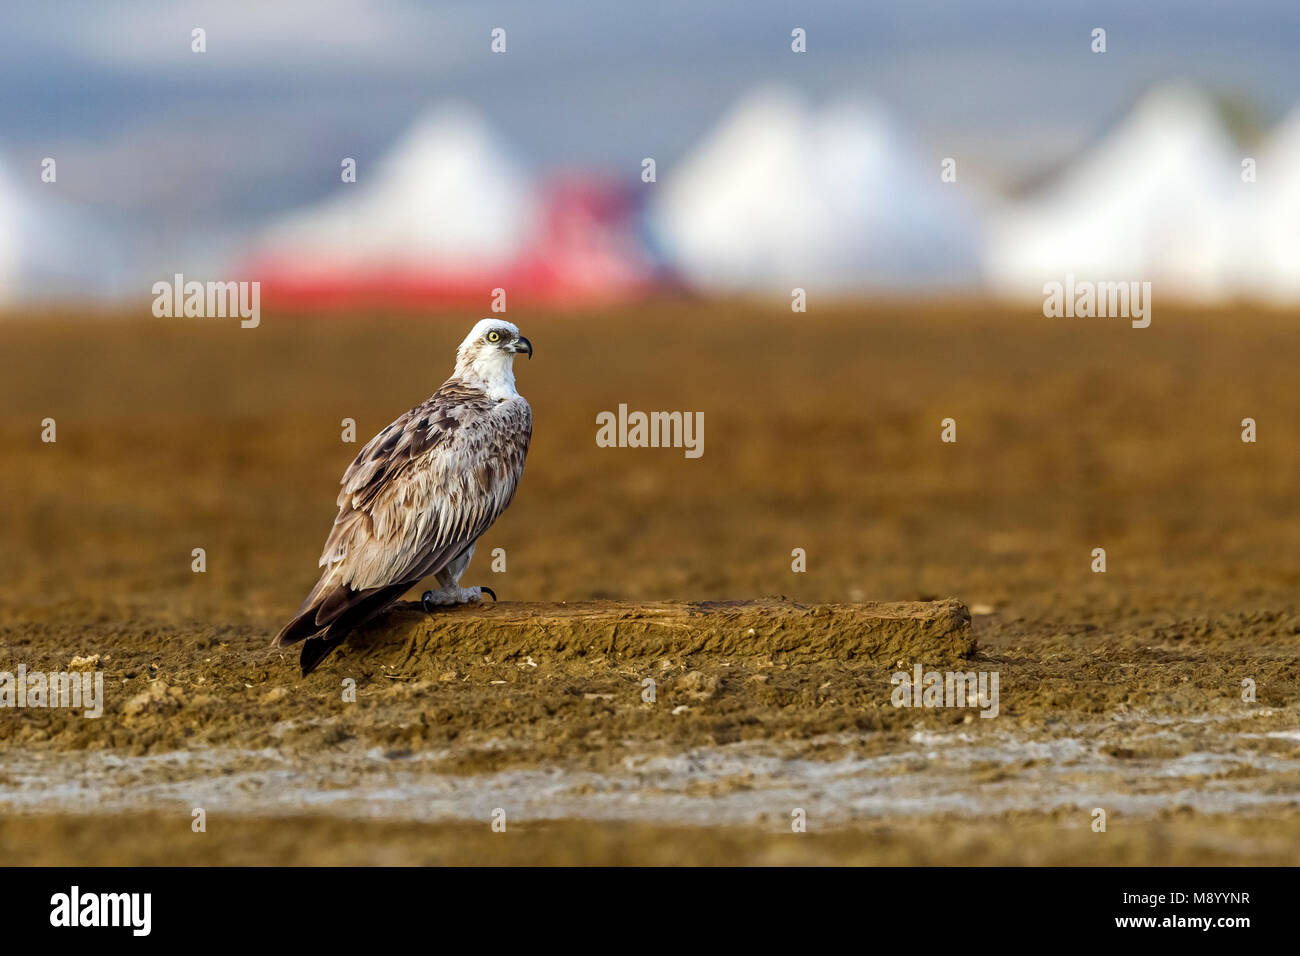 Immature Osprey sitting on ground, Wadi Lahami, Egypt. Stock Photo